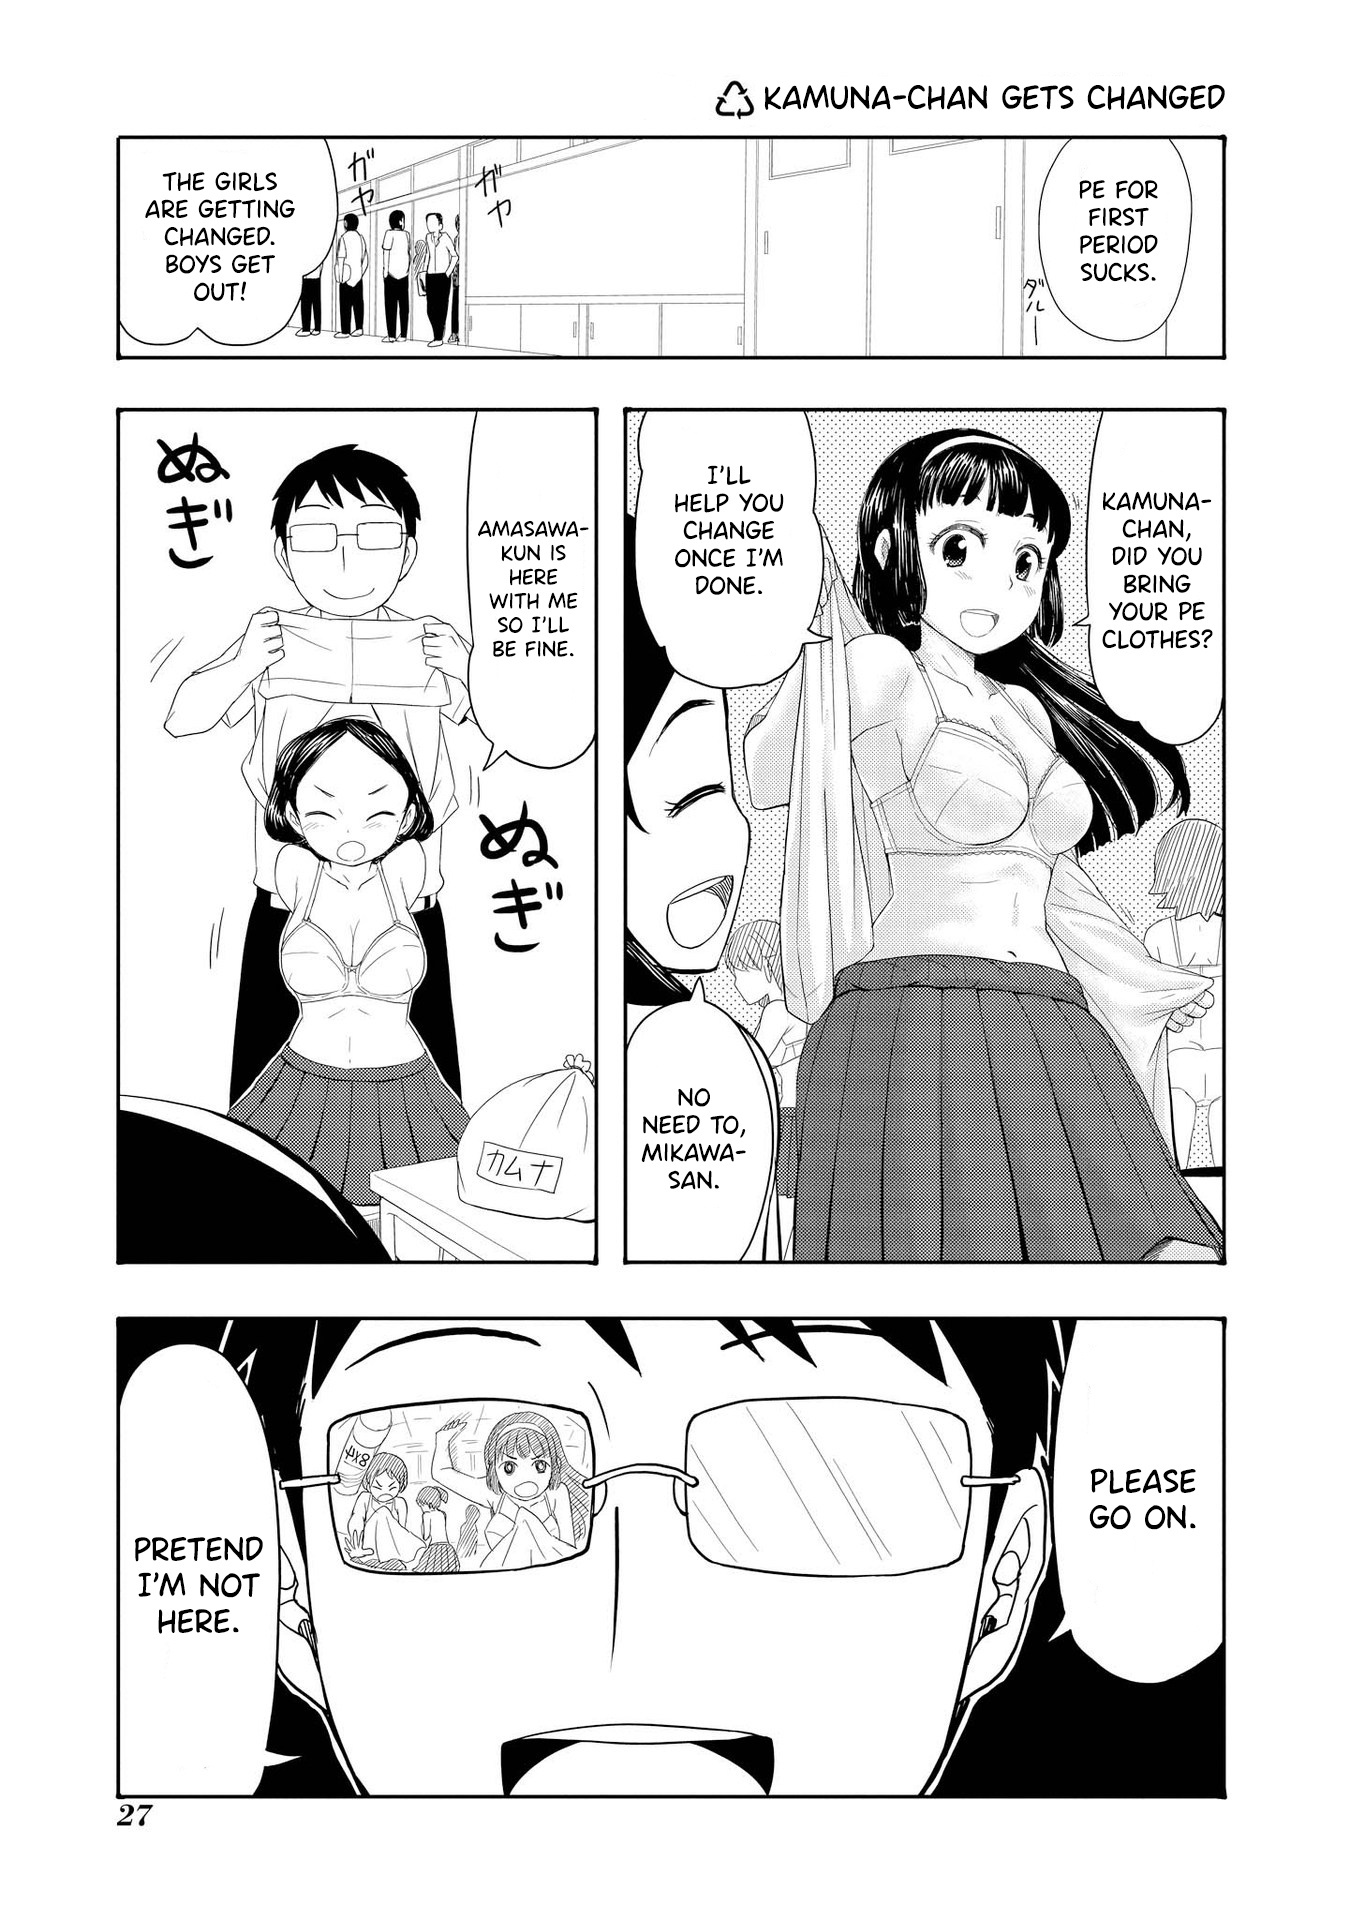 Amasawa-Kun And Kamuna-Chan - Page 1